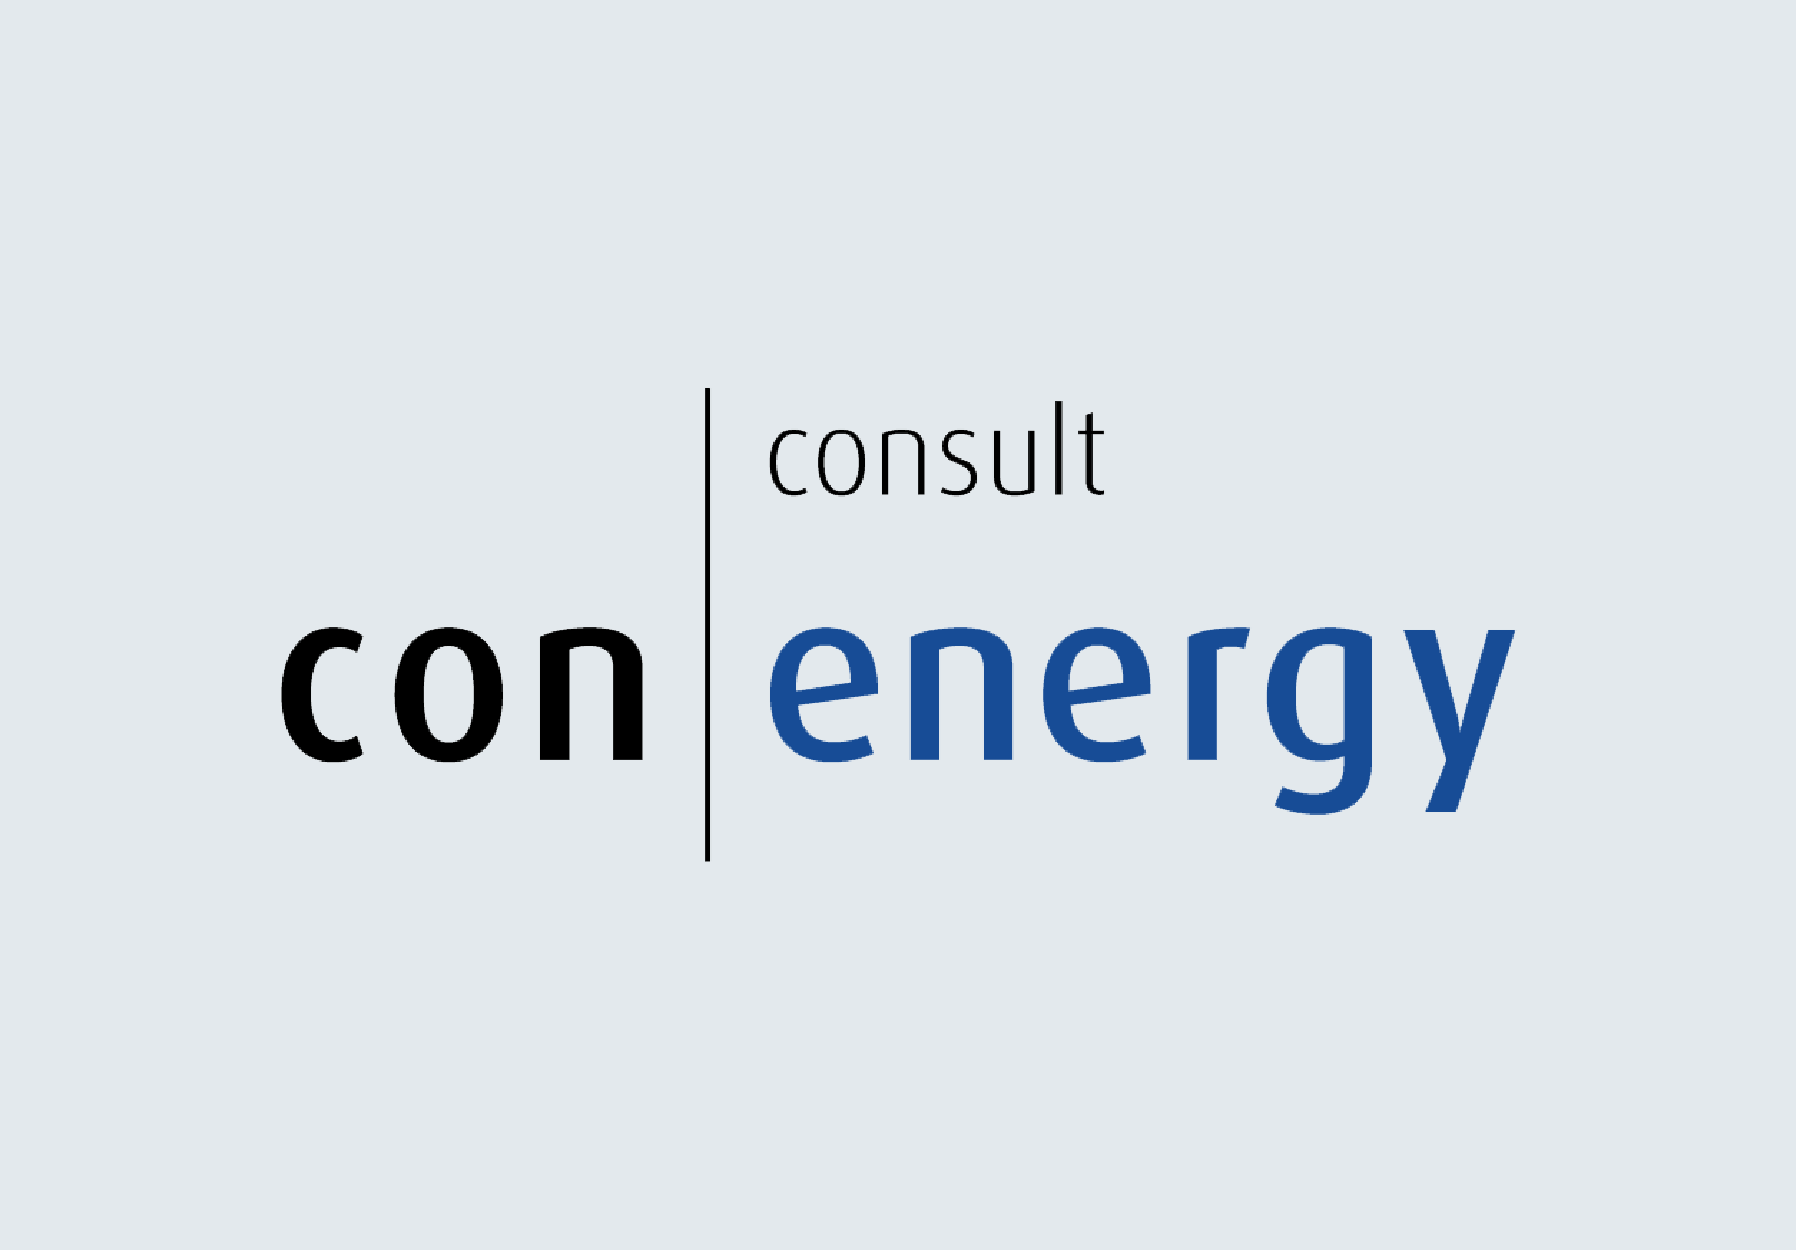 con|energy consult GmbH